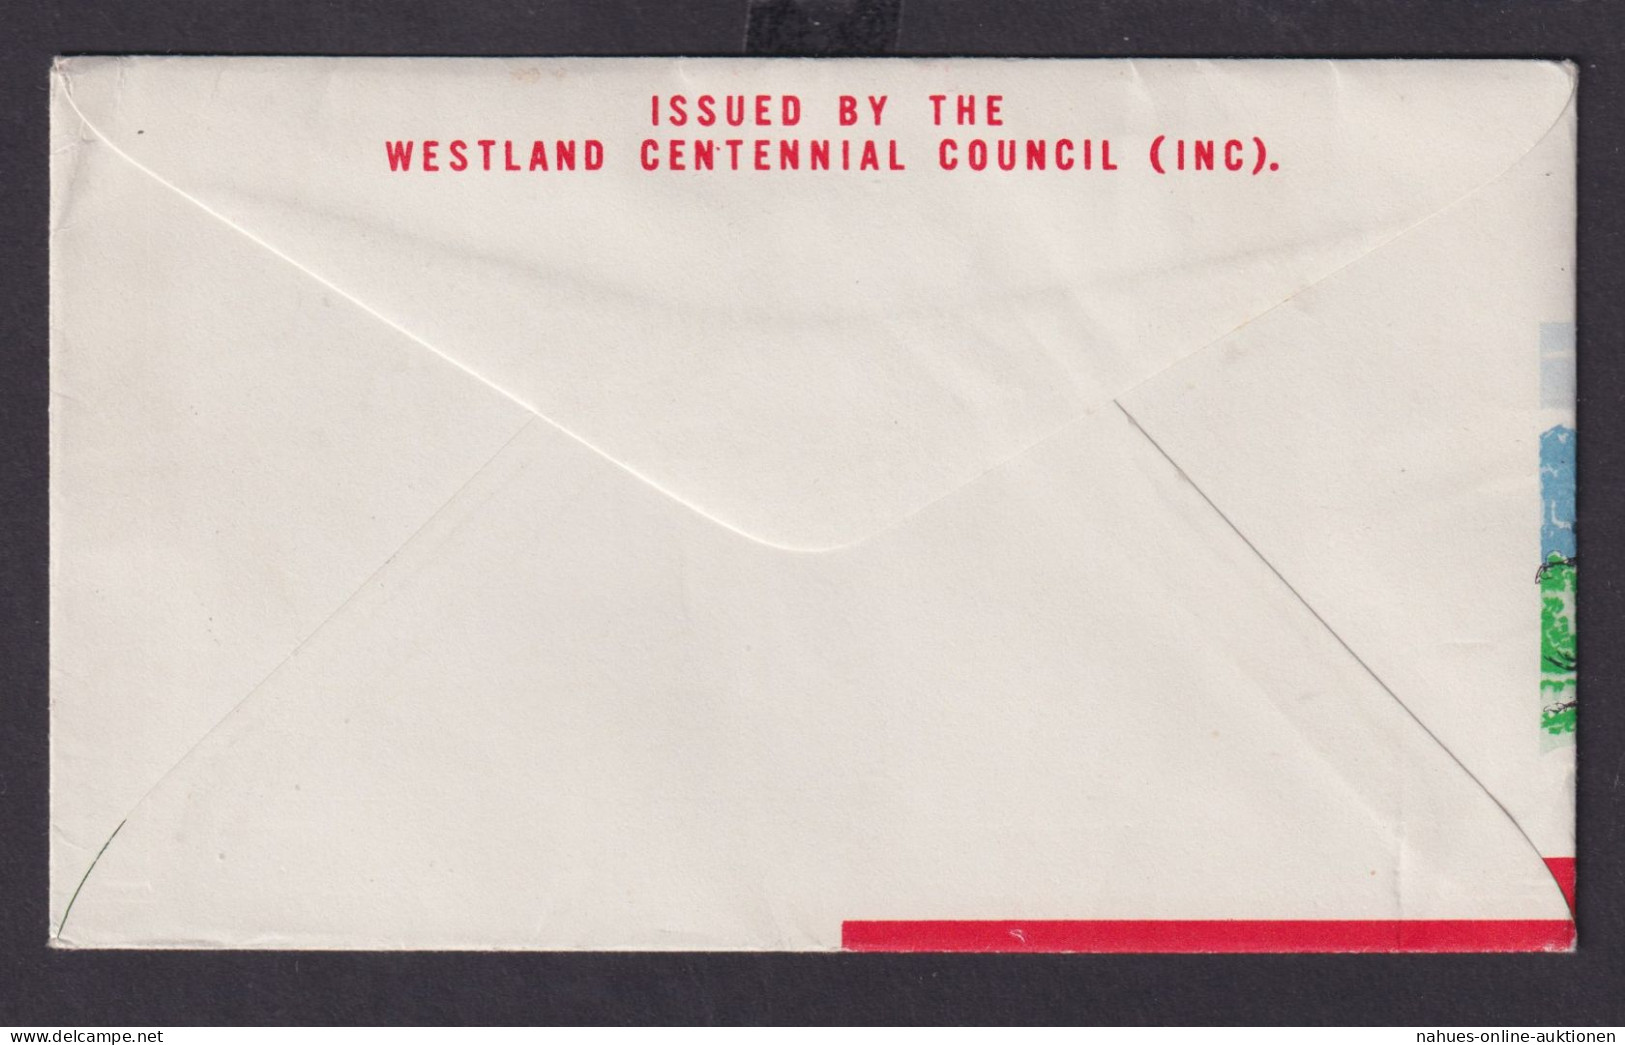 Flugpost Neuseeland Brief 389-391 Provinz Westland Destination Westland - Brieven En Documenten